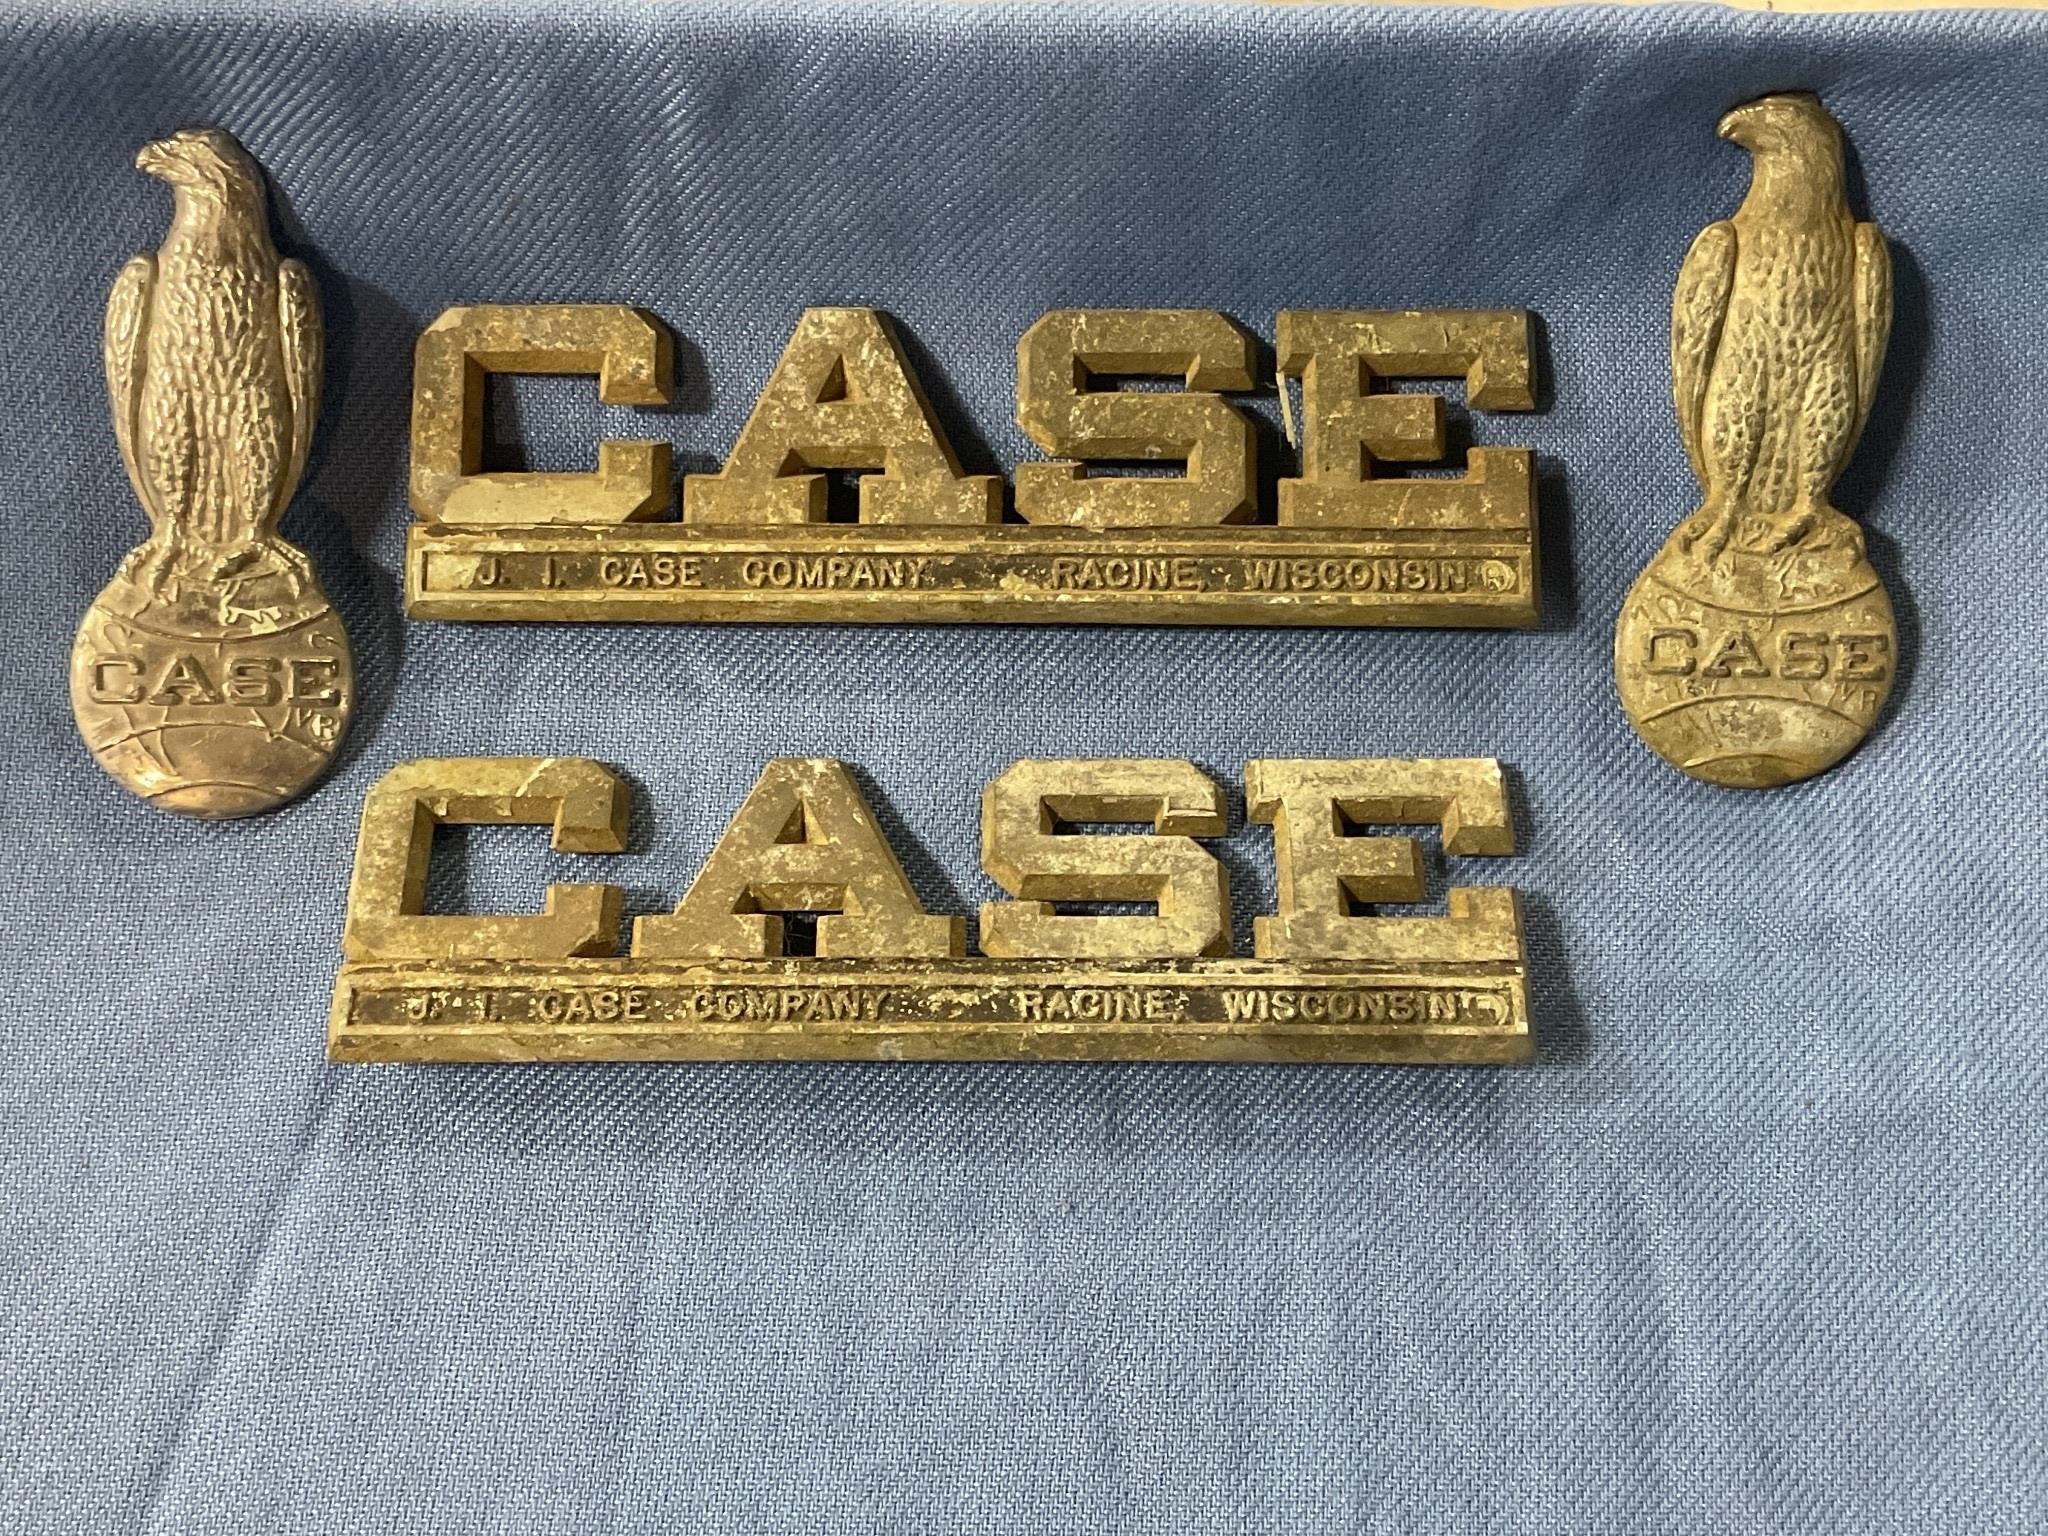 Vintage Case Emblems in display